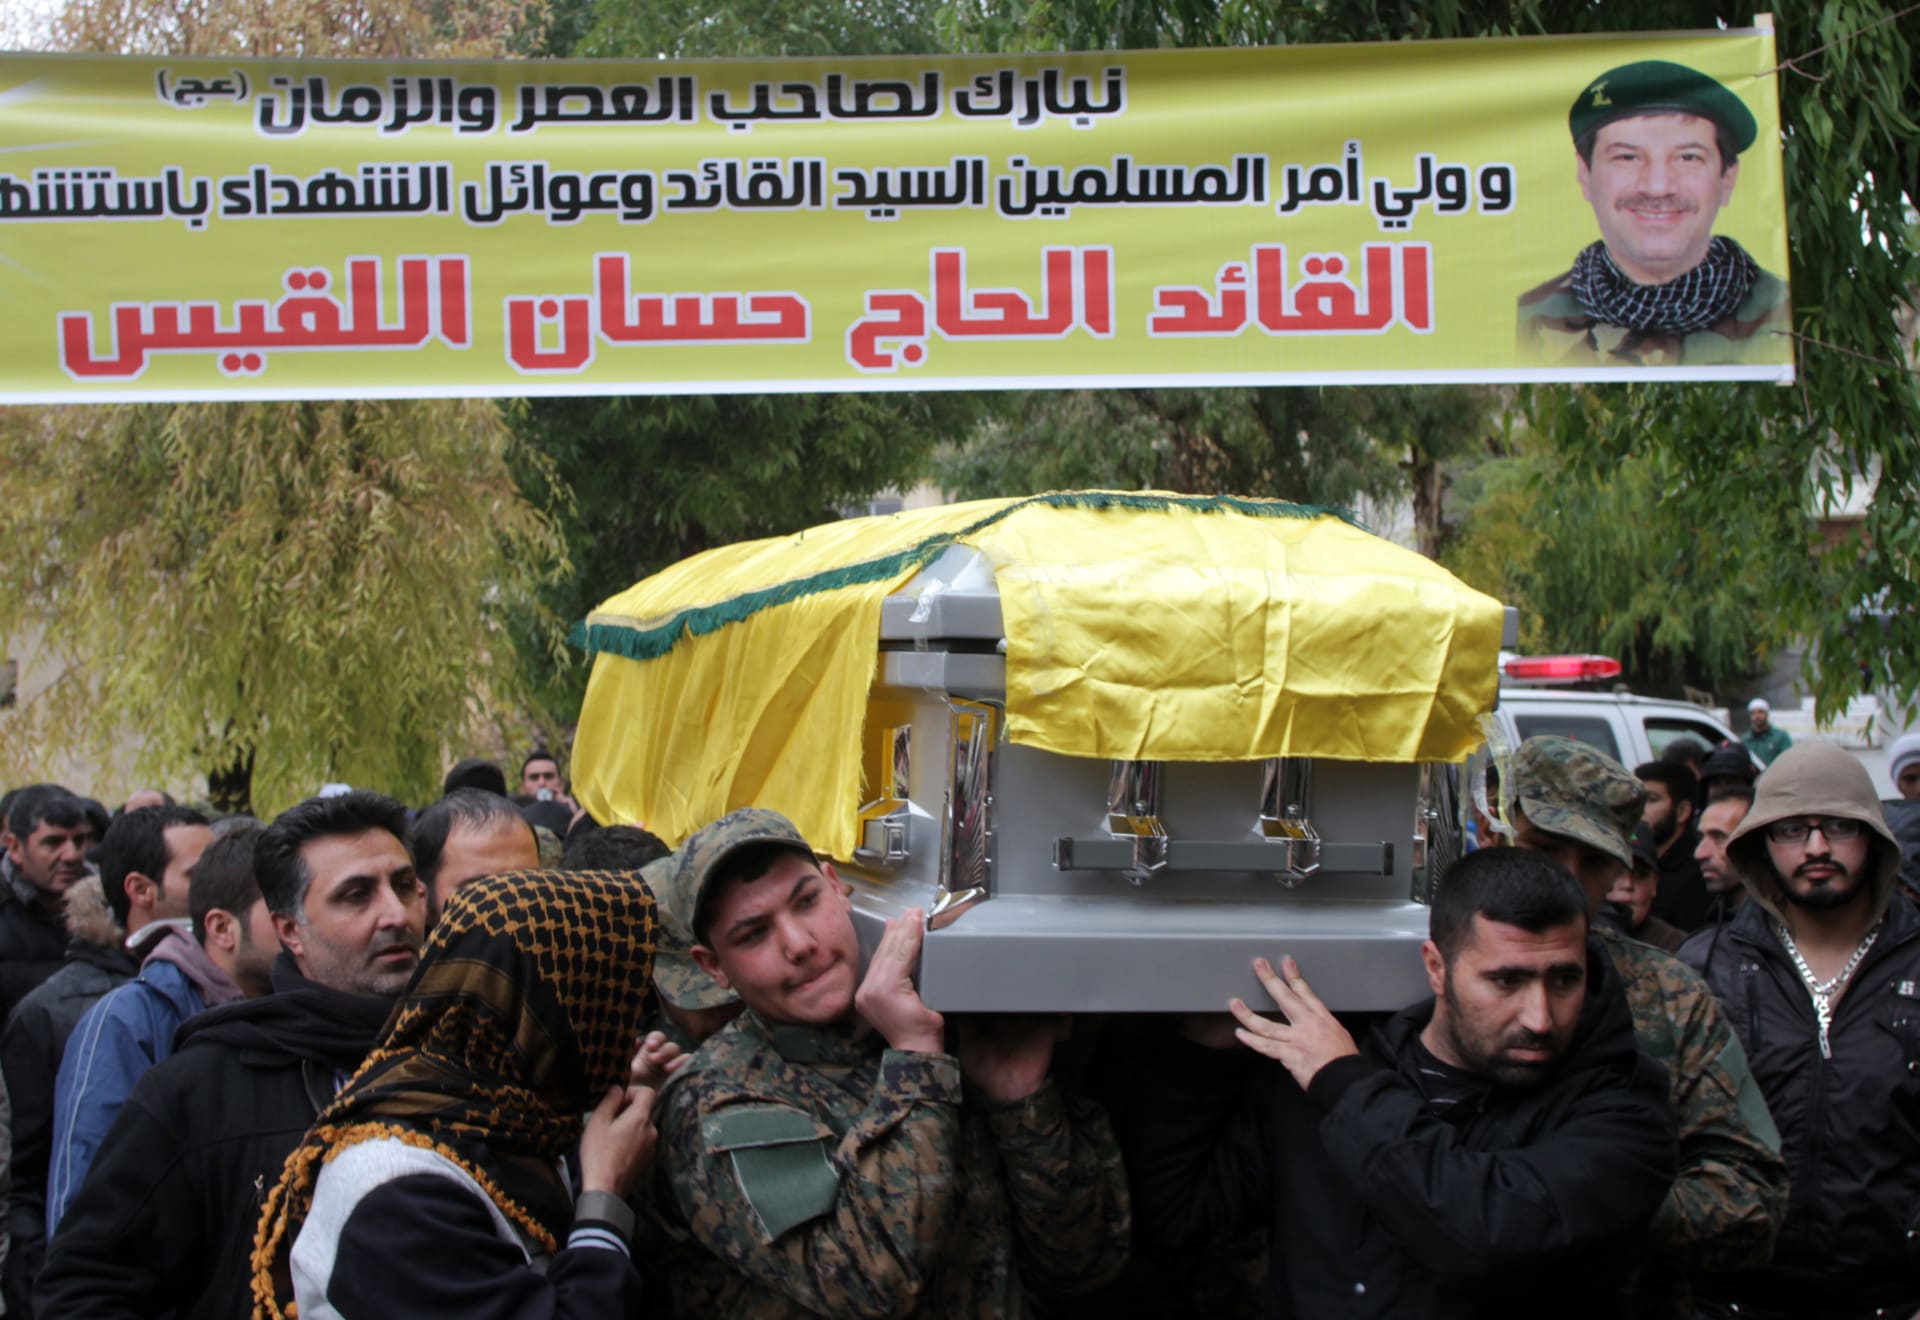 جنائز حزب الله تتواصل ومعارضون سوريون يؤكدون بالصور مقتل ألف من عناصره